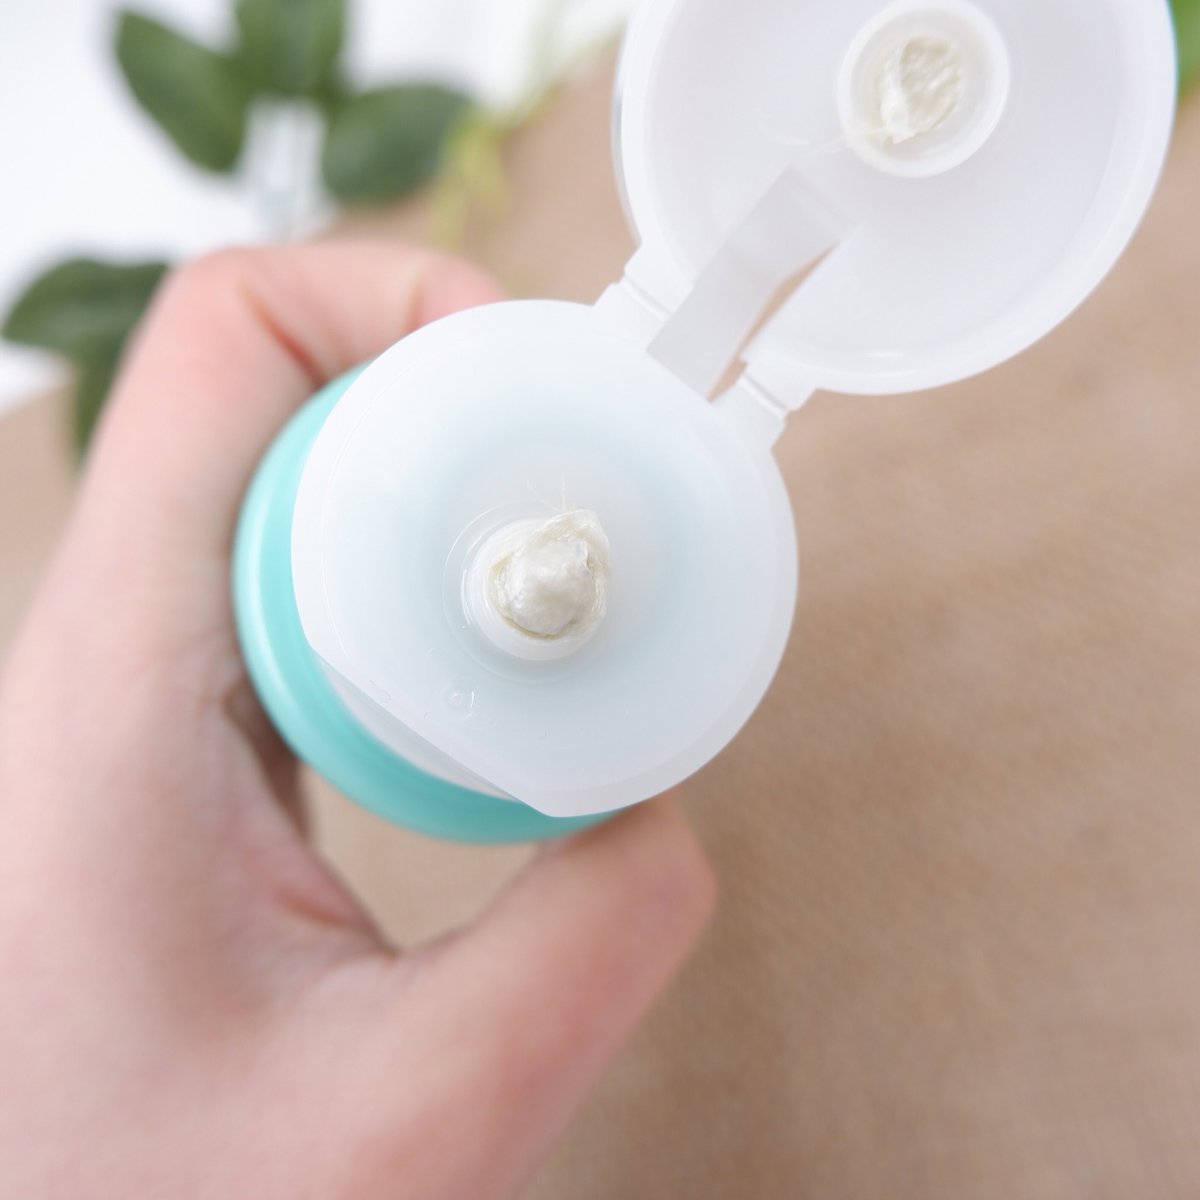 Sữa Rửa Mặt Senka Dành Cho Da Mụn Perfect Whip Acne Care 100g